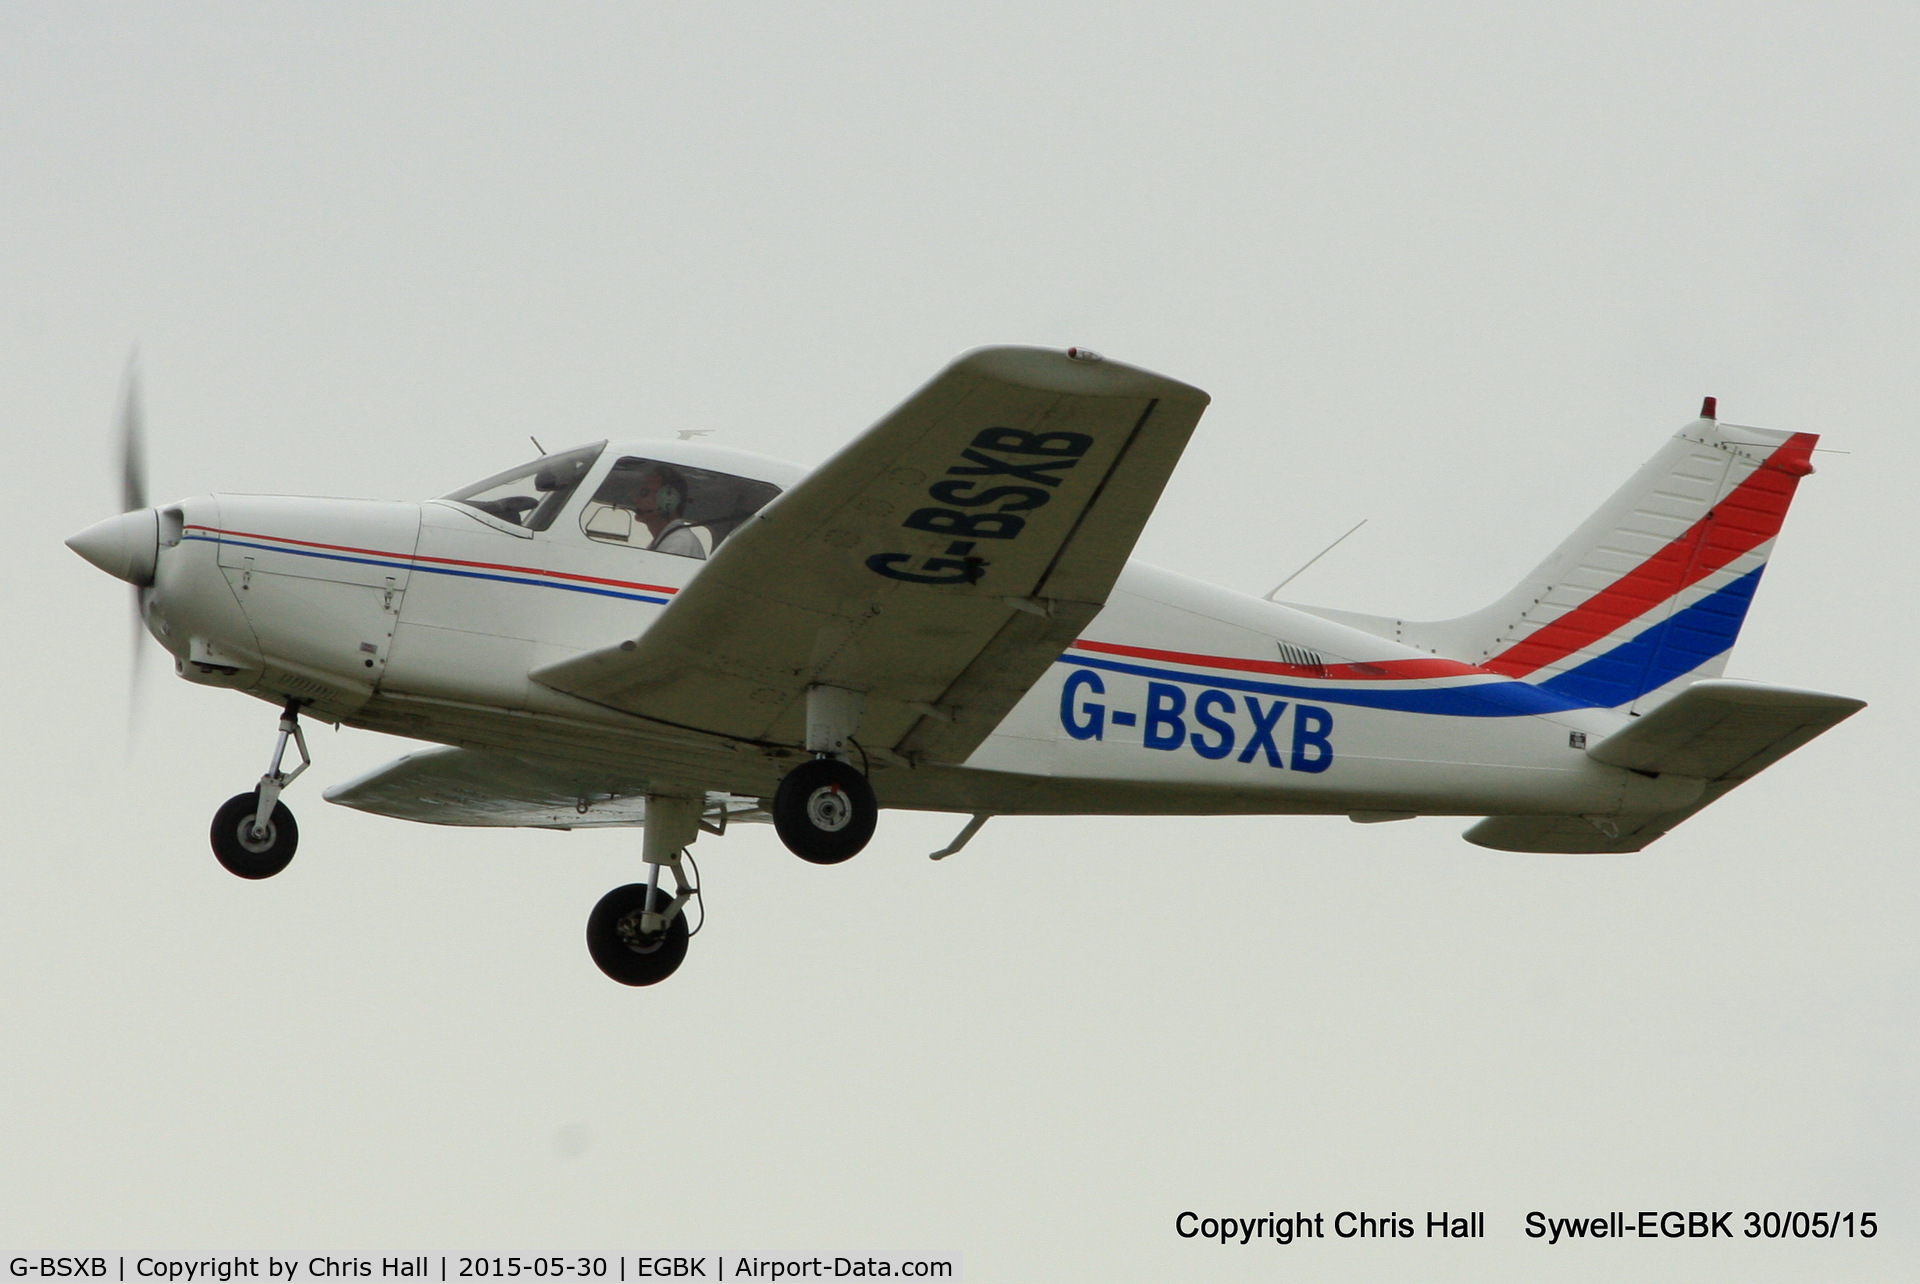 G-BSXB, 1984 Piper PA-28-161 Cherokee Warrior II C/N 28-8416125, at Aeroexpo 2015